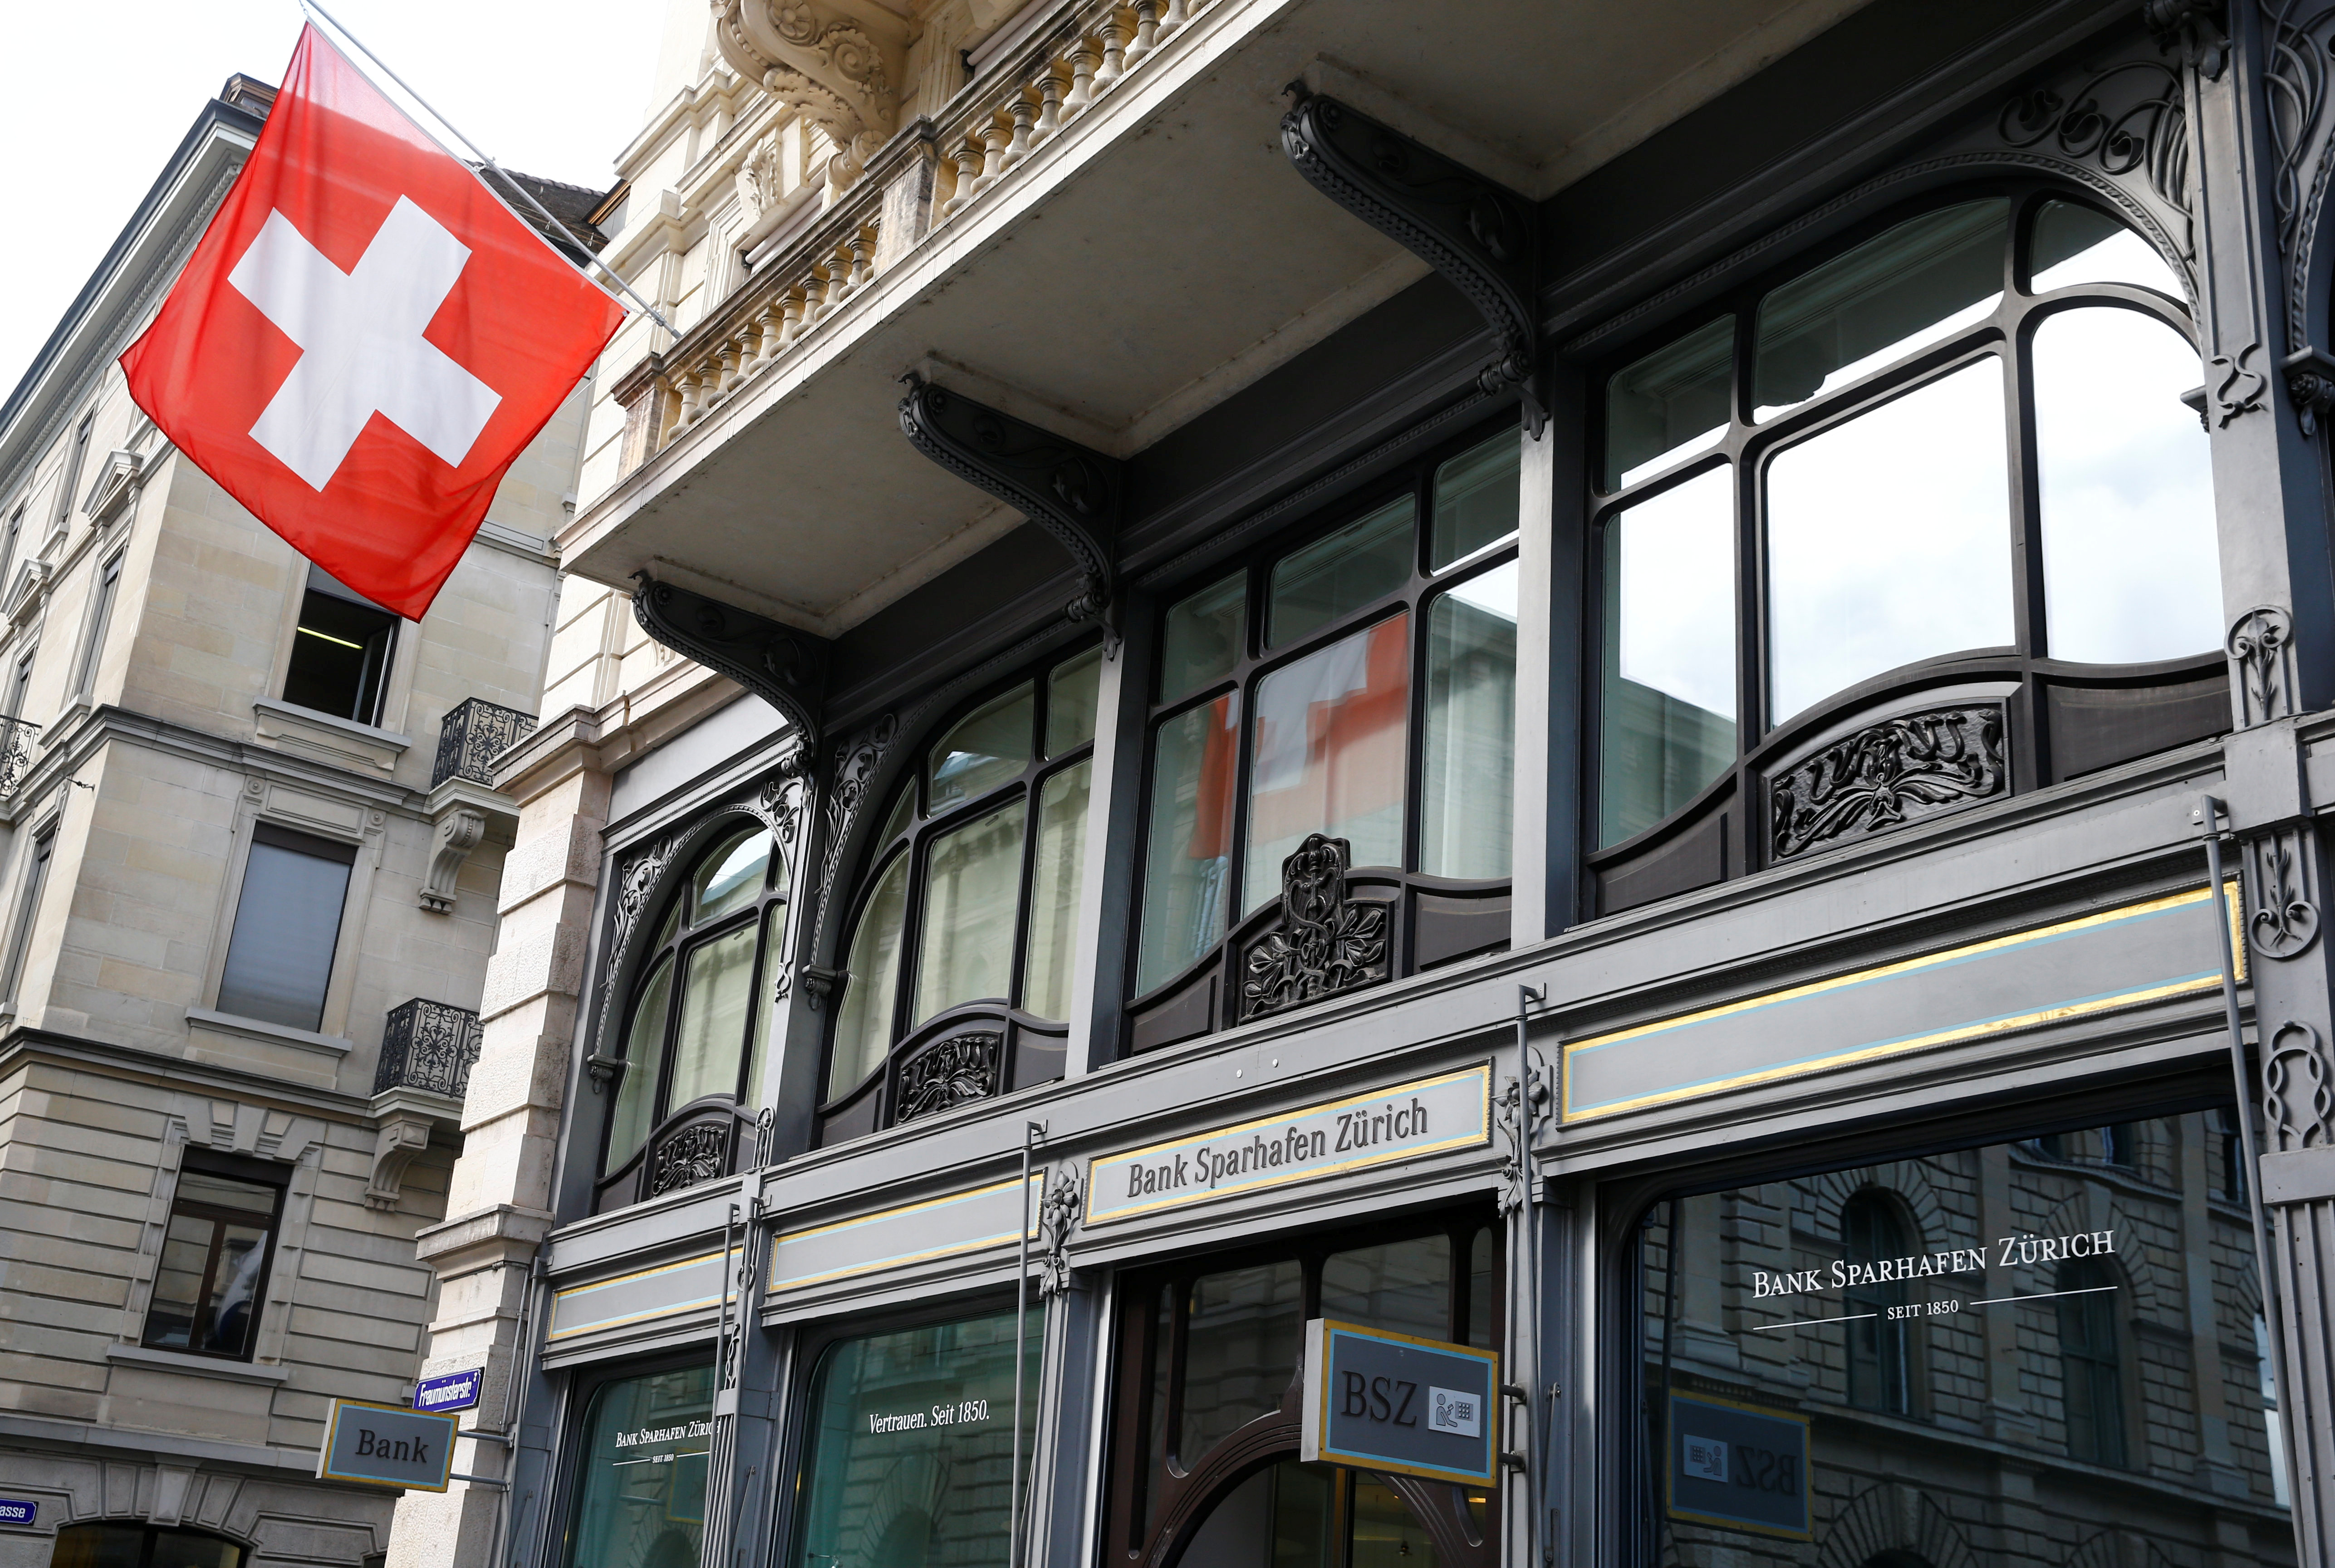 Switzerland's national flag flies at the headquarters of Swiss bank Bank Sparhafen Zuerich in Zurich